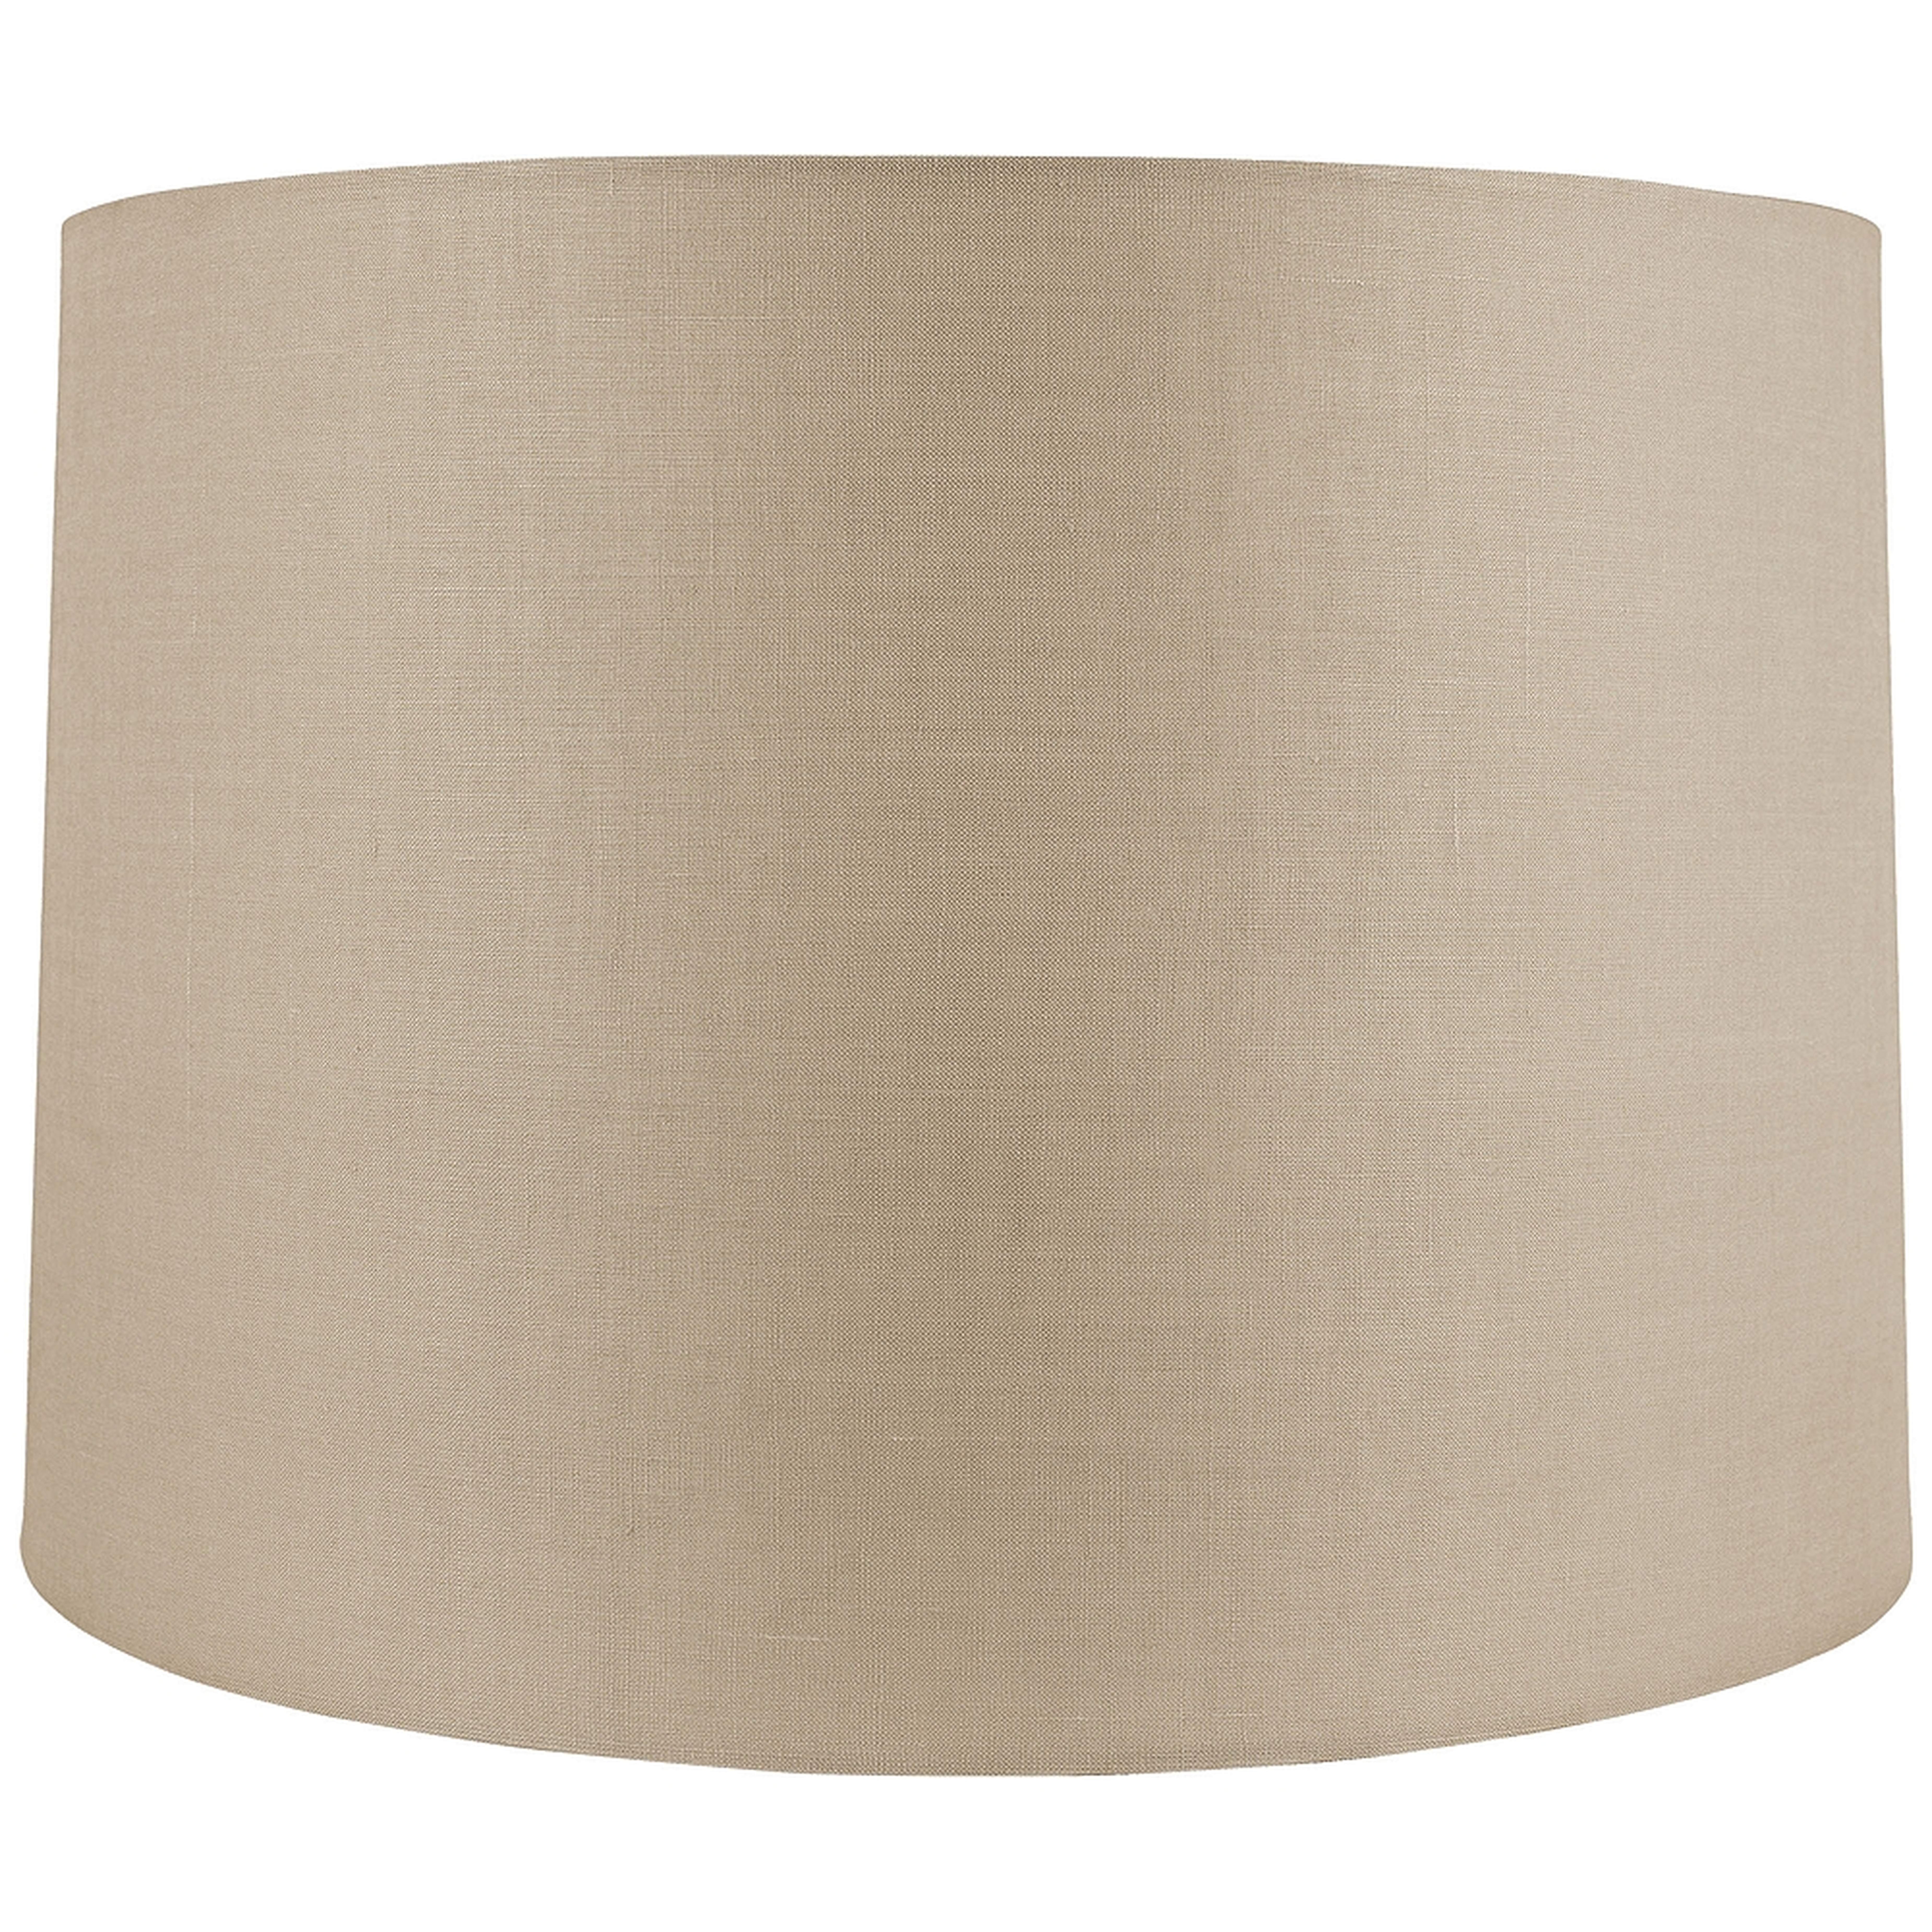 Beige Linen Round Drum Shade 16x17x11.5 (Spider) - Style # 8M196 - Lamps Plus